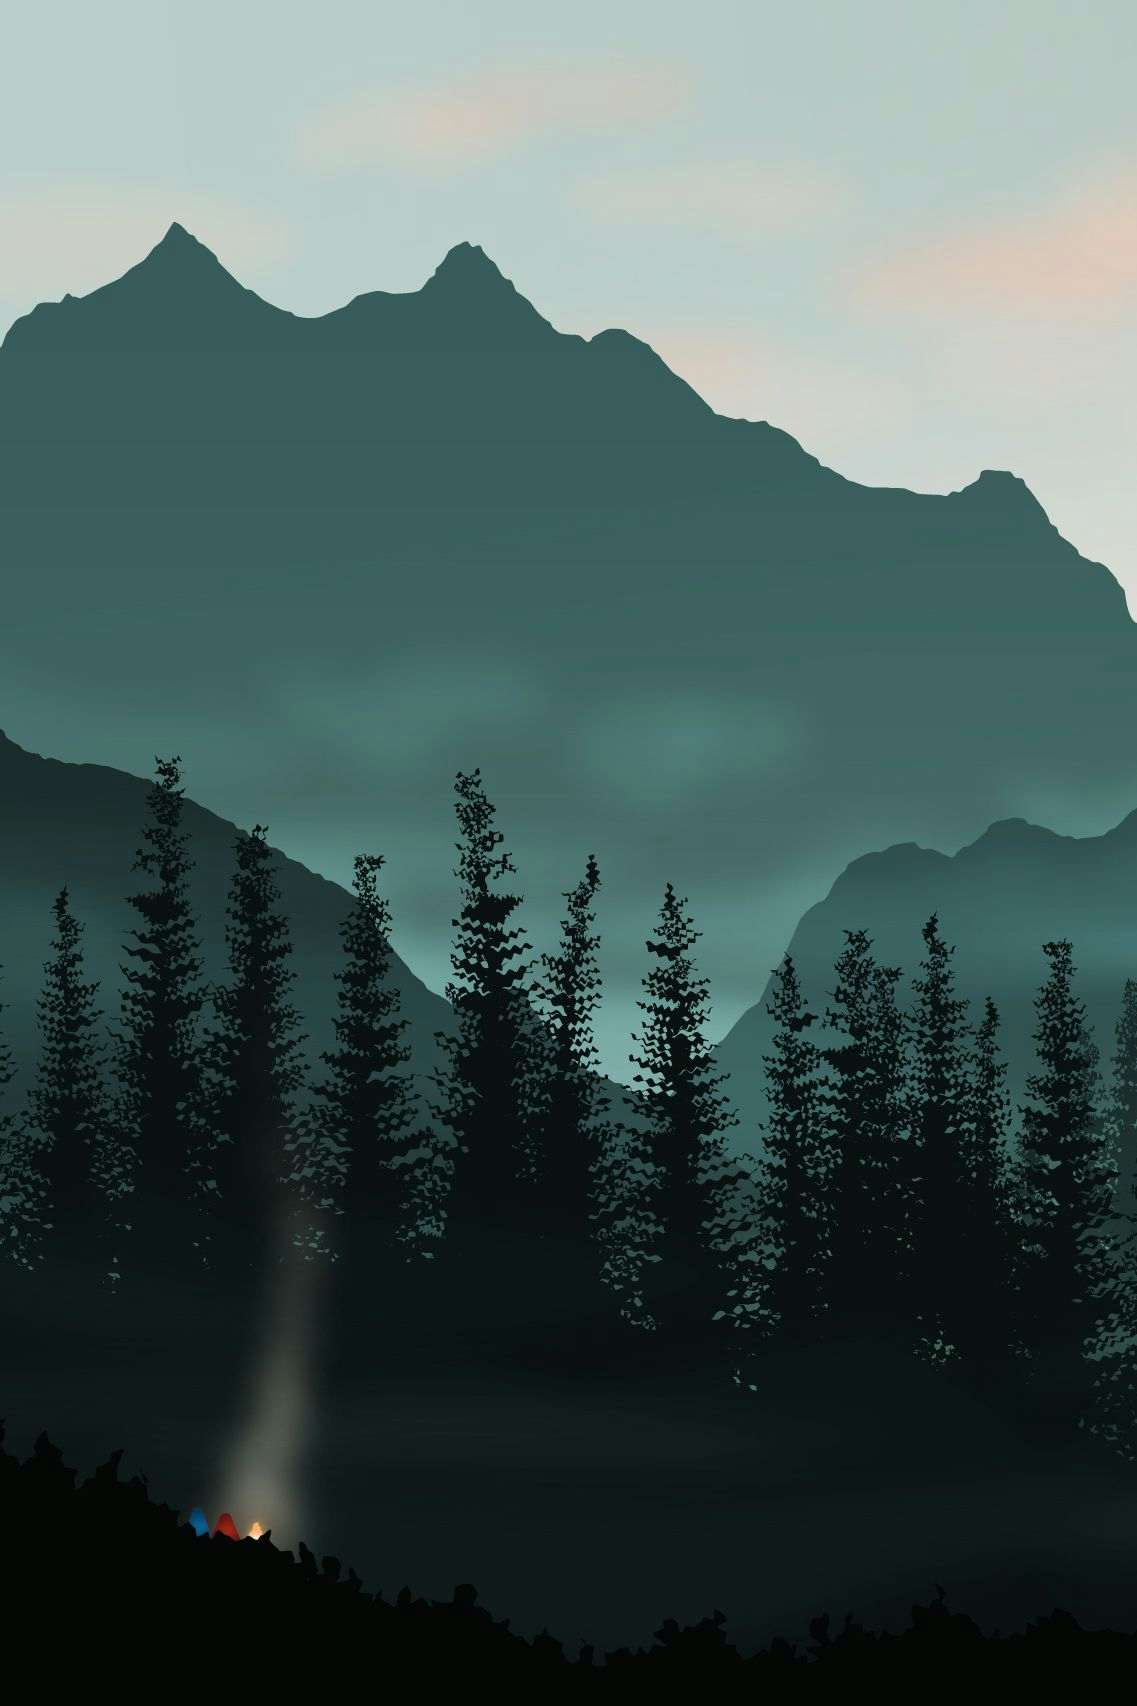 Alpine landscape illustration by Xavier Wendling